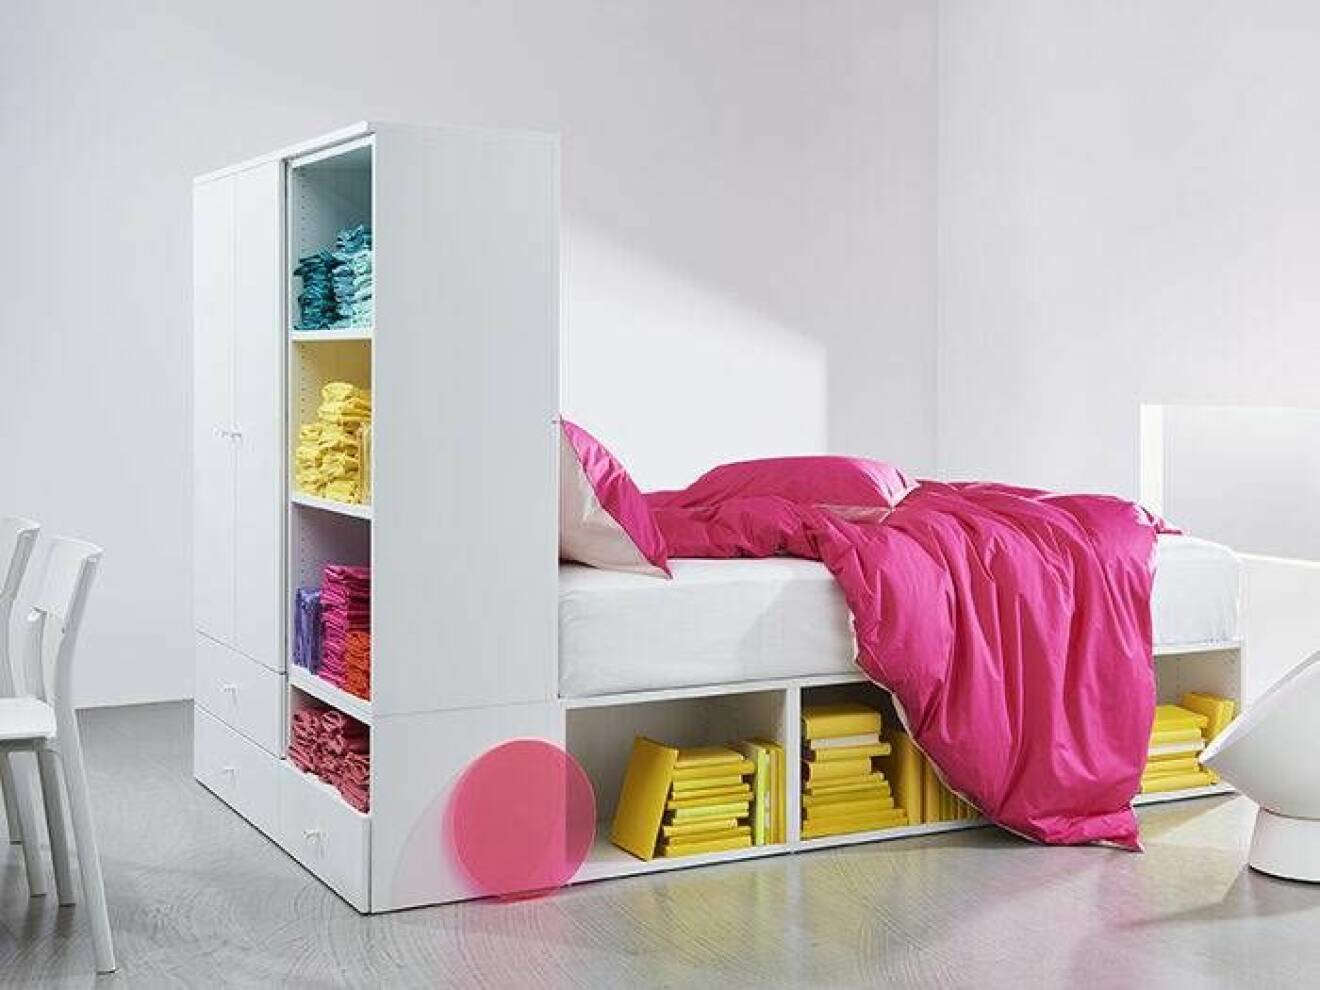 Compact living-säng med förvaring från Ikea, hösten 2019